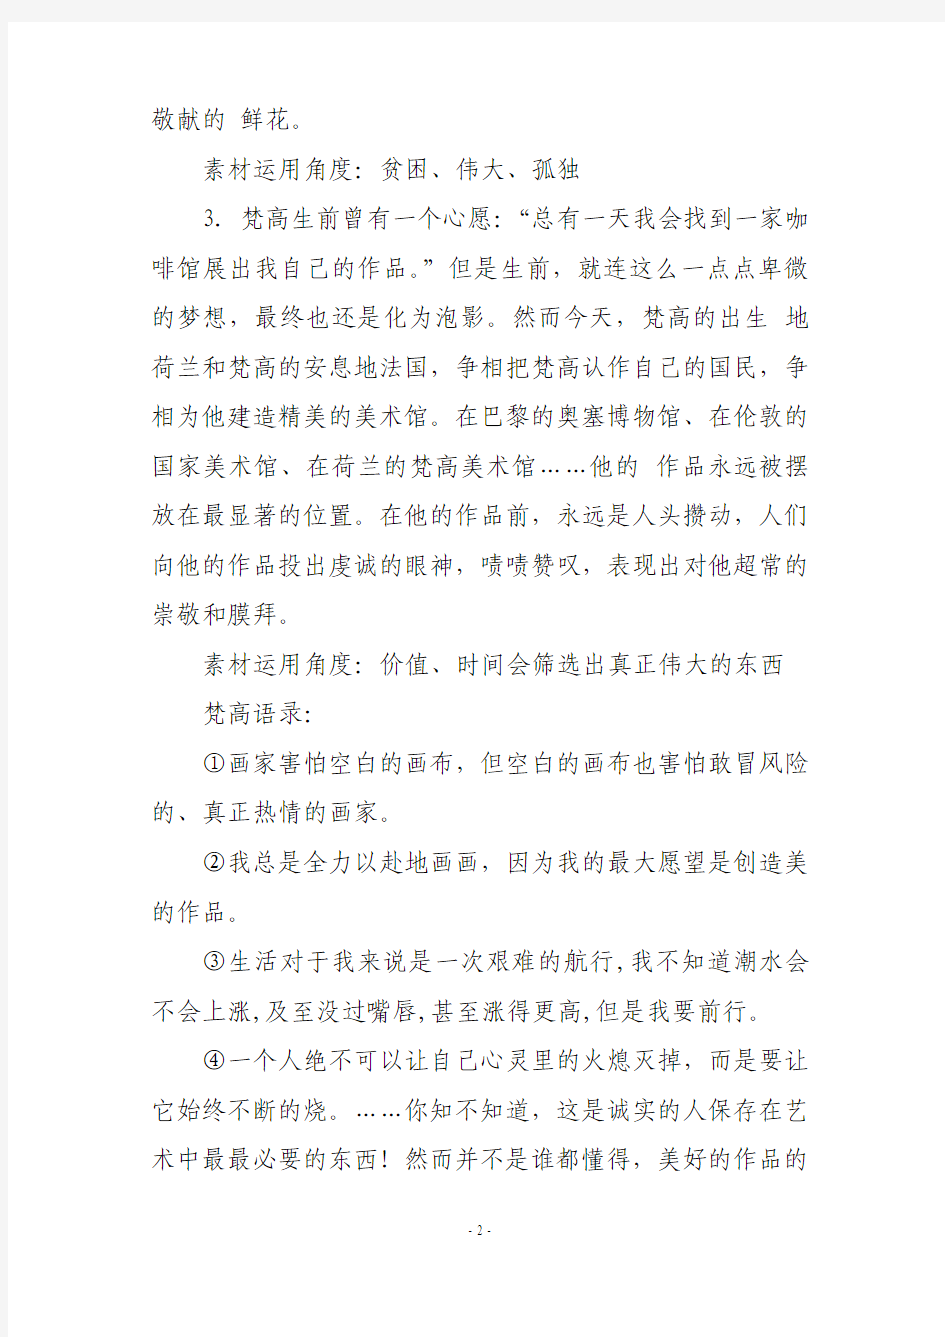 初中语文作文万能人物素材10则,助你写出好作文